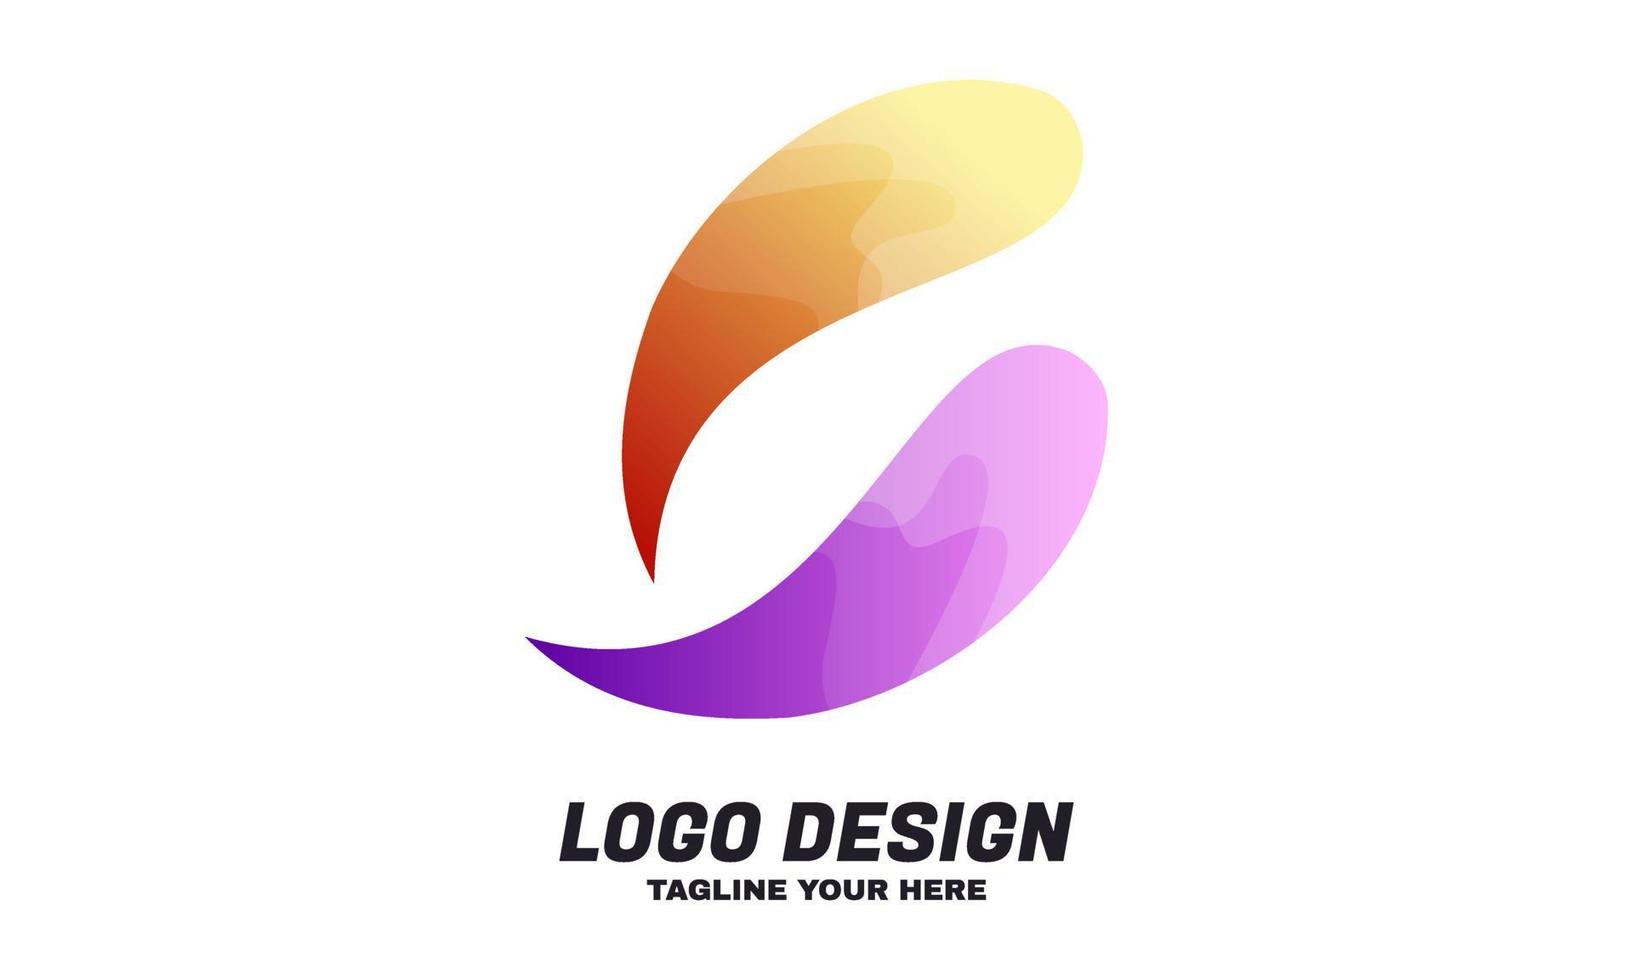 stock vecteur coloré abstrait tourbillon paisley société logo conception modèle idées vecteur meilleur pour l'identité